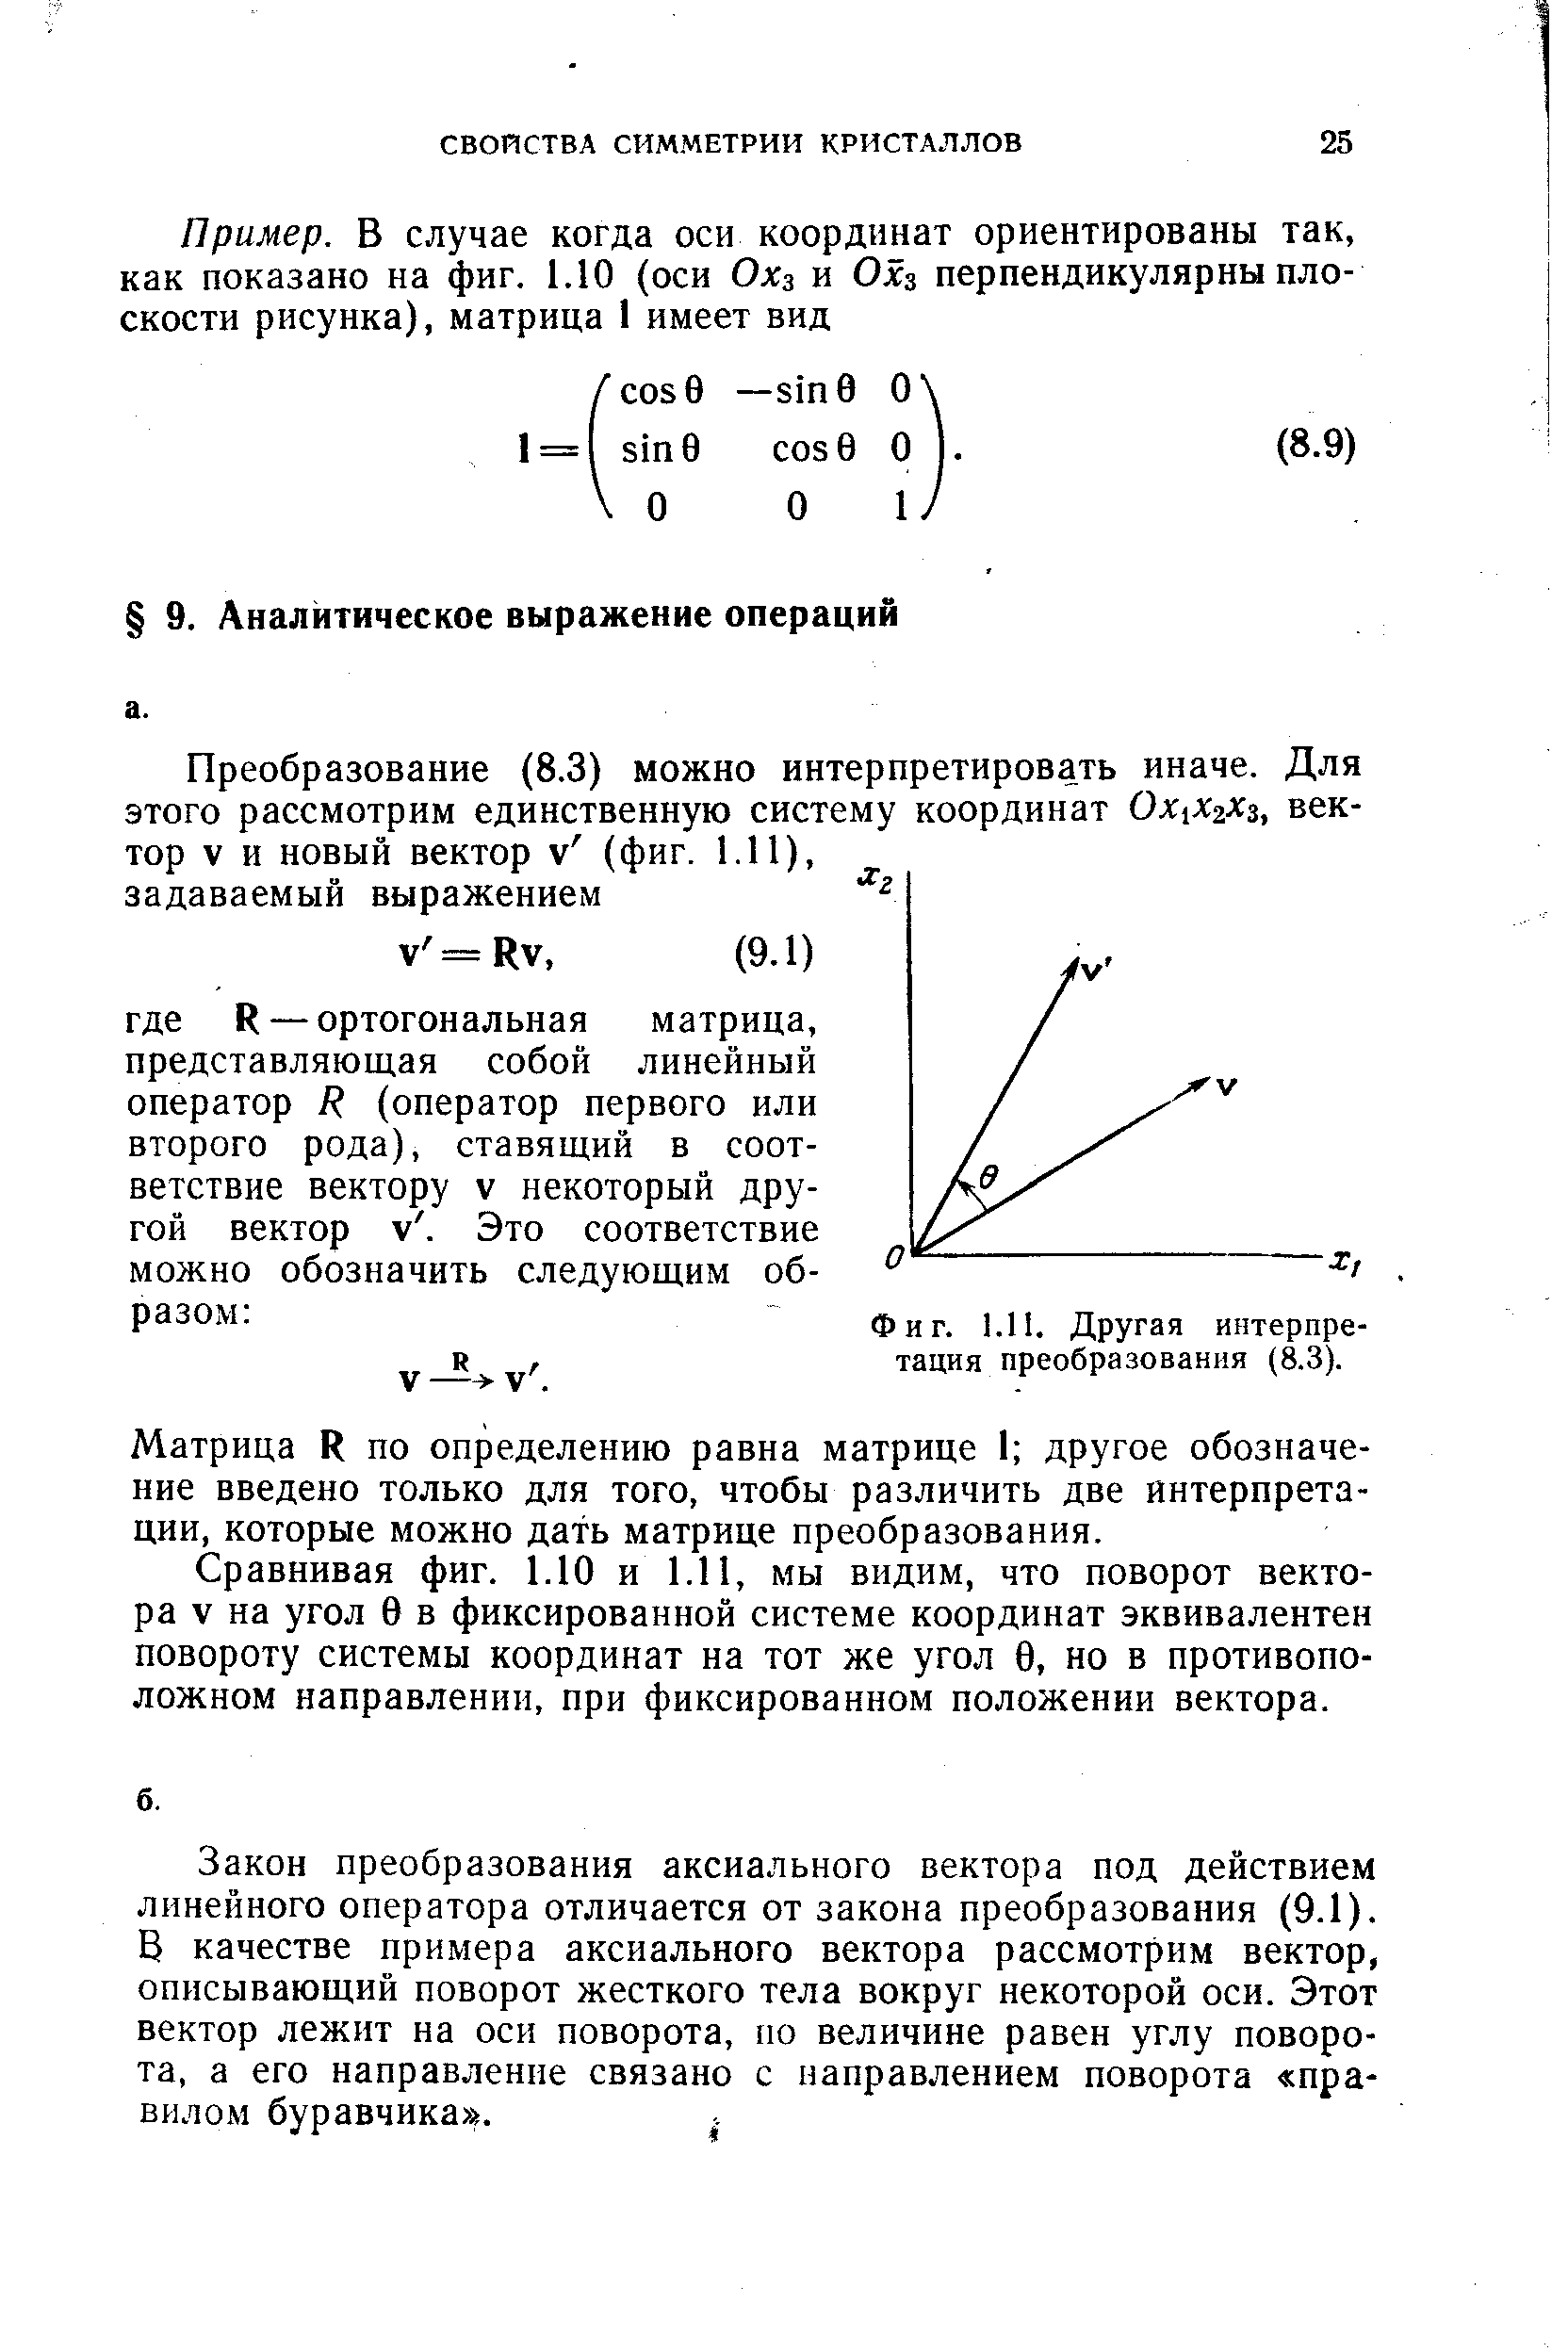 Матрица К по определению равна матрице 1 другое обозначение введено только для того, чтобы различить две интерпретации, которые можно дать матрице преобразования.